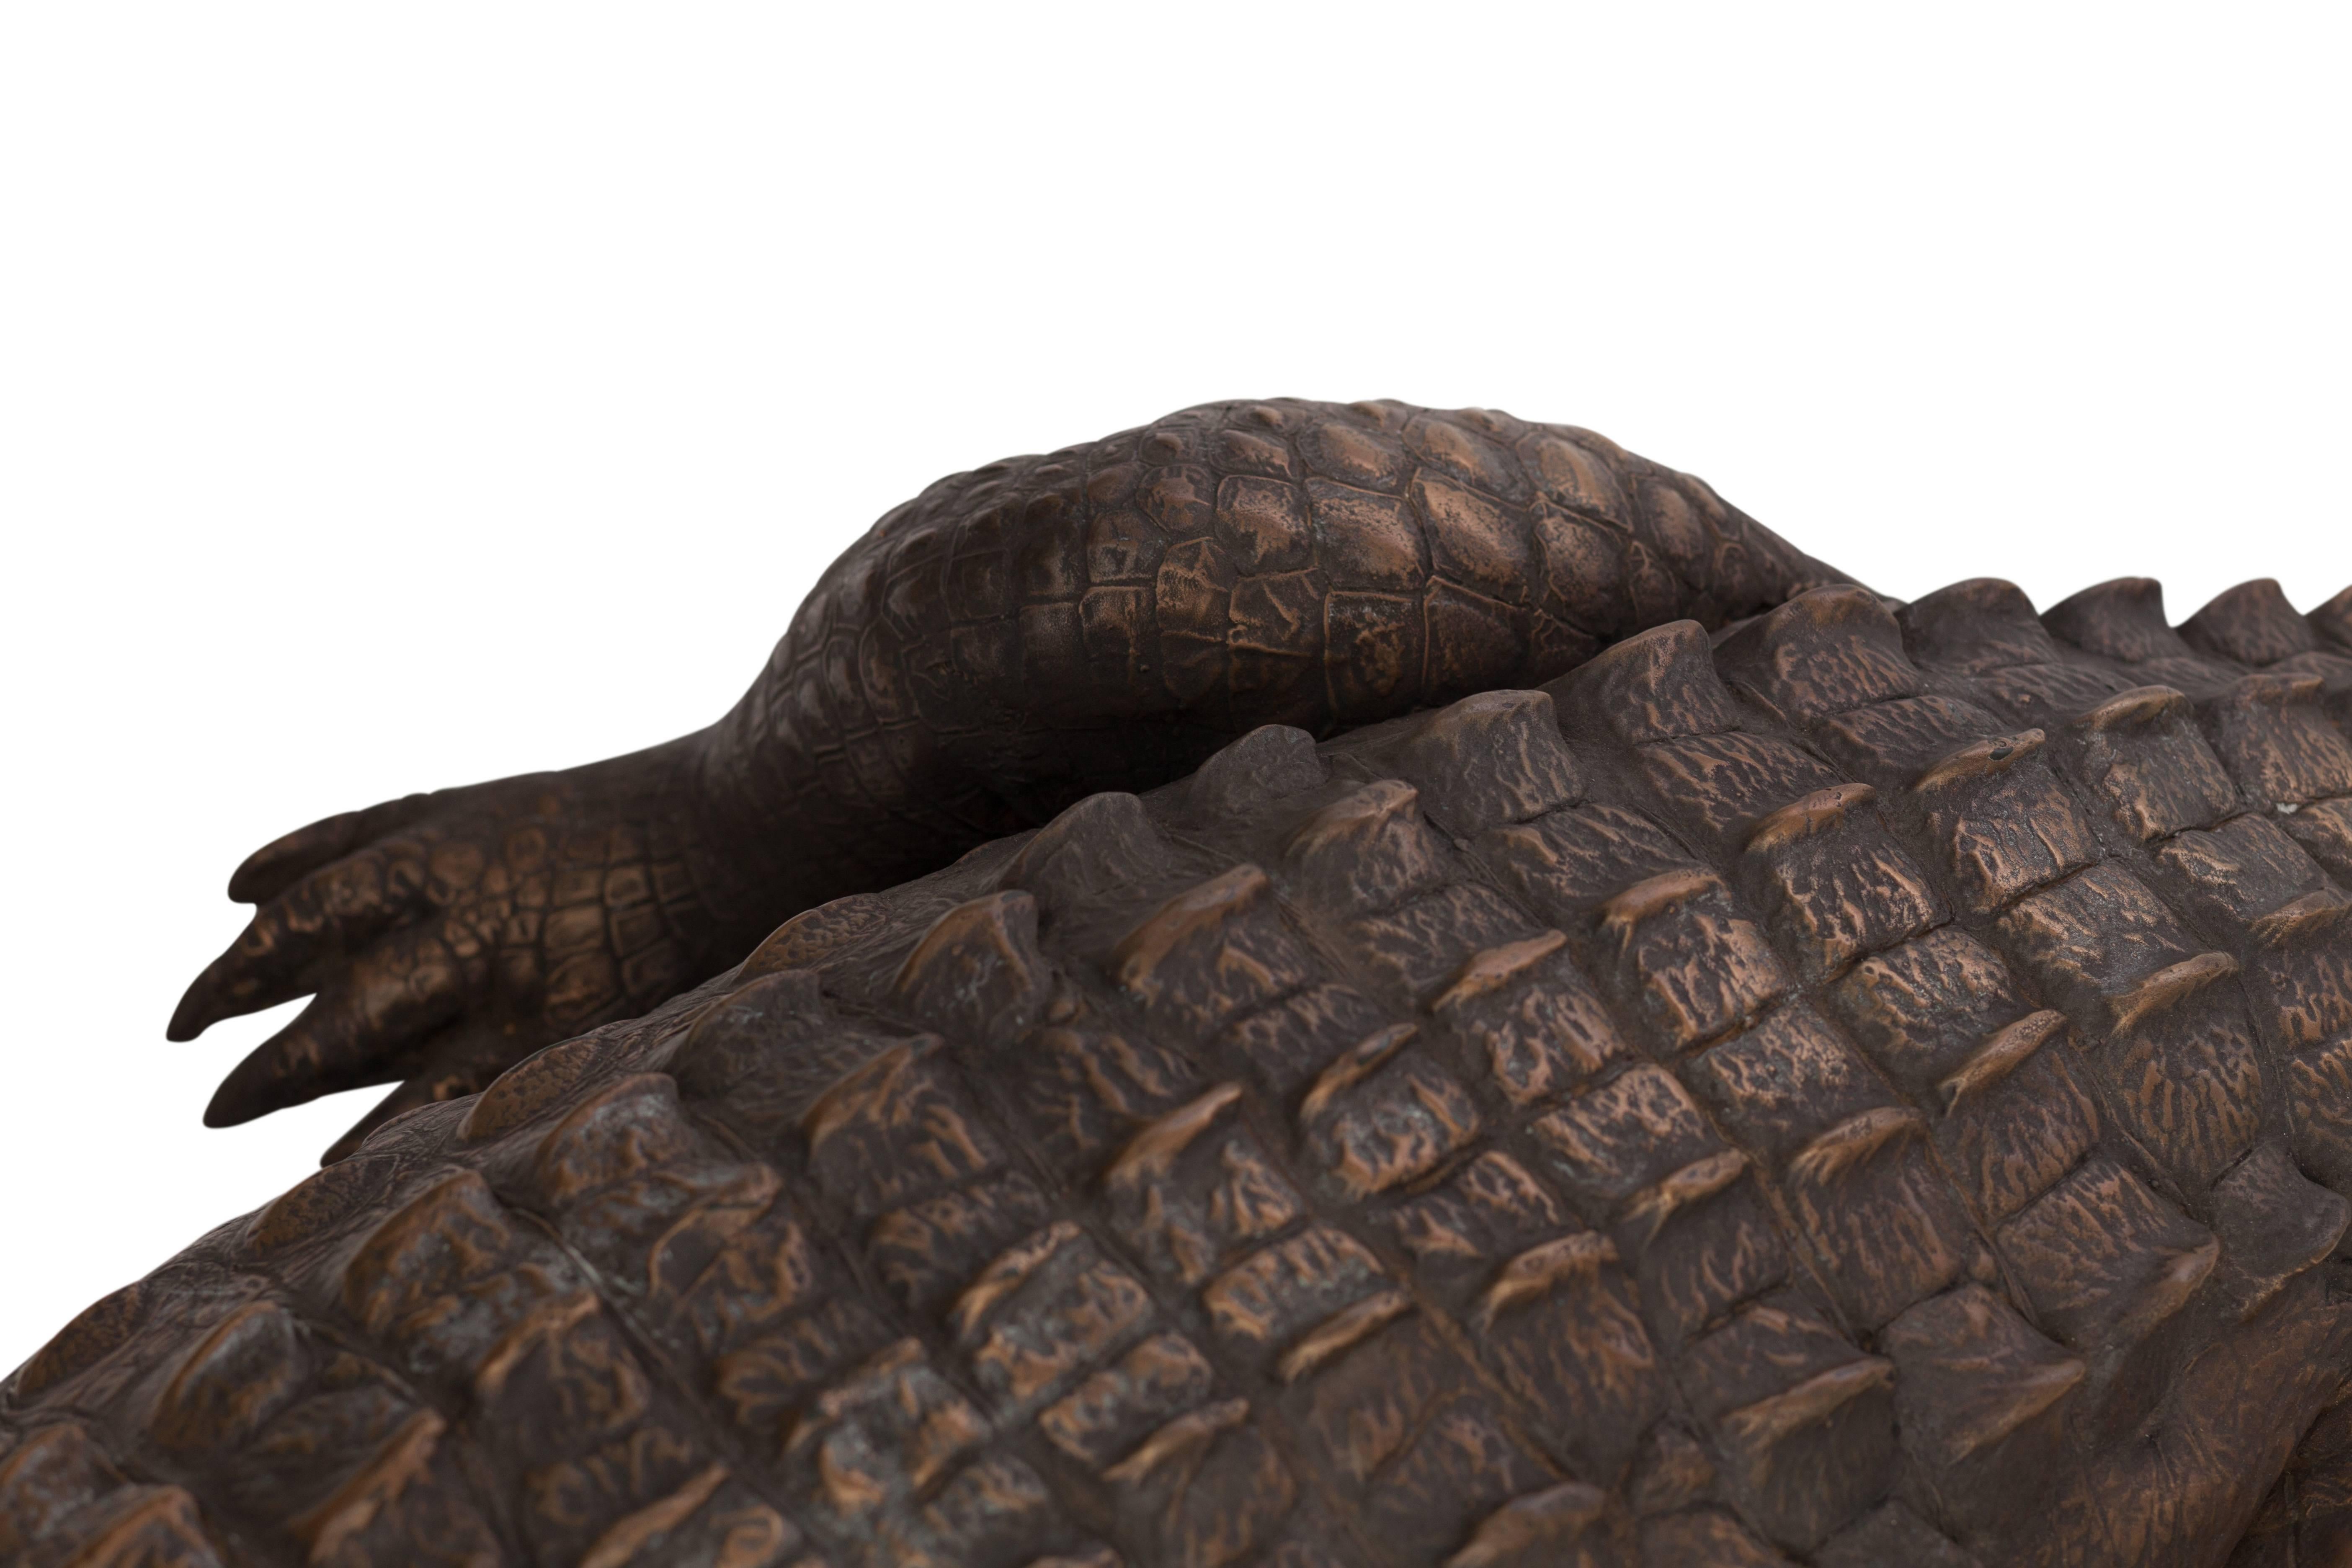 Bronzed Fiberglass Life-Size Crocodile Sculpture 1